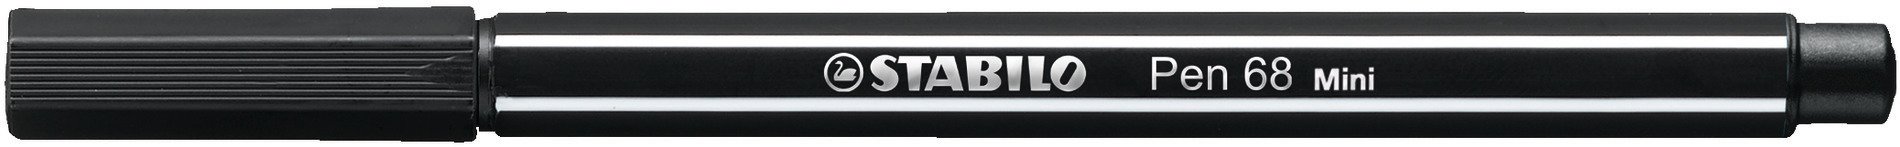 Fasermaler STABILO Pen 68 Mini